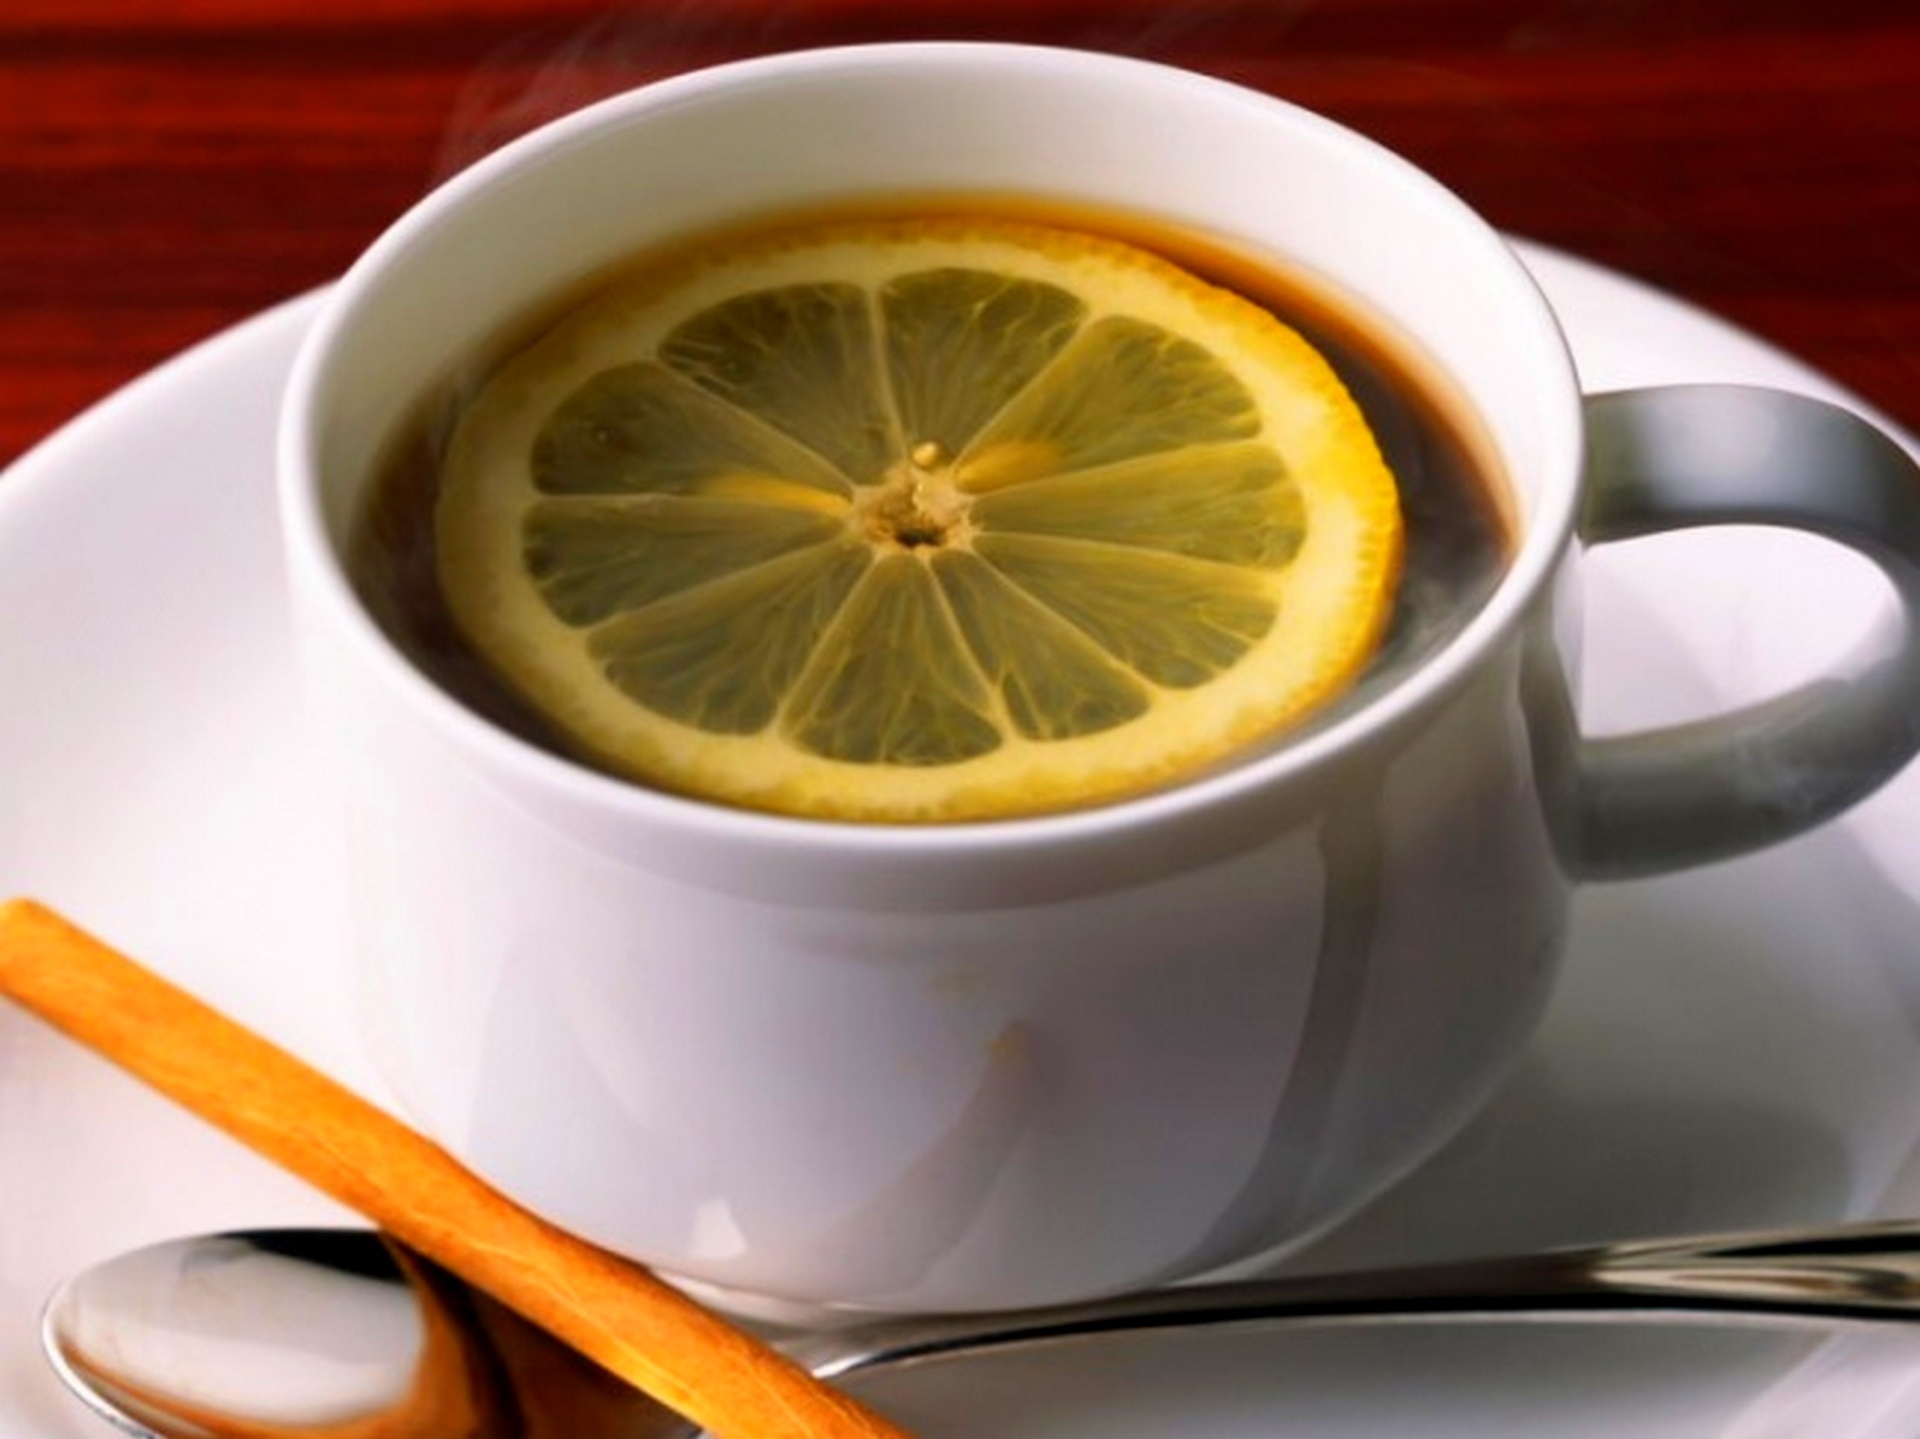 Что будет если пить чай с лимоном